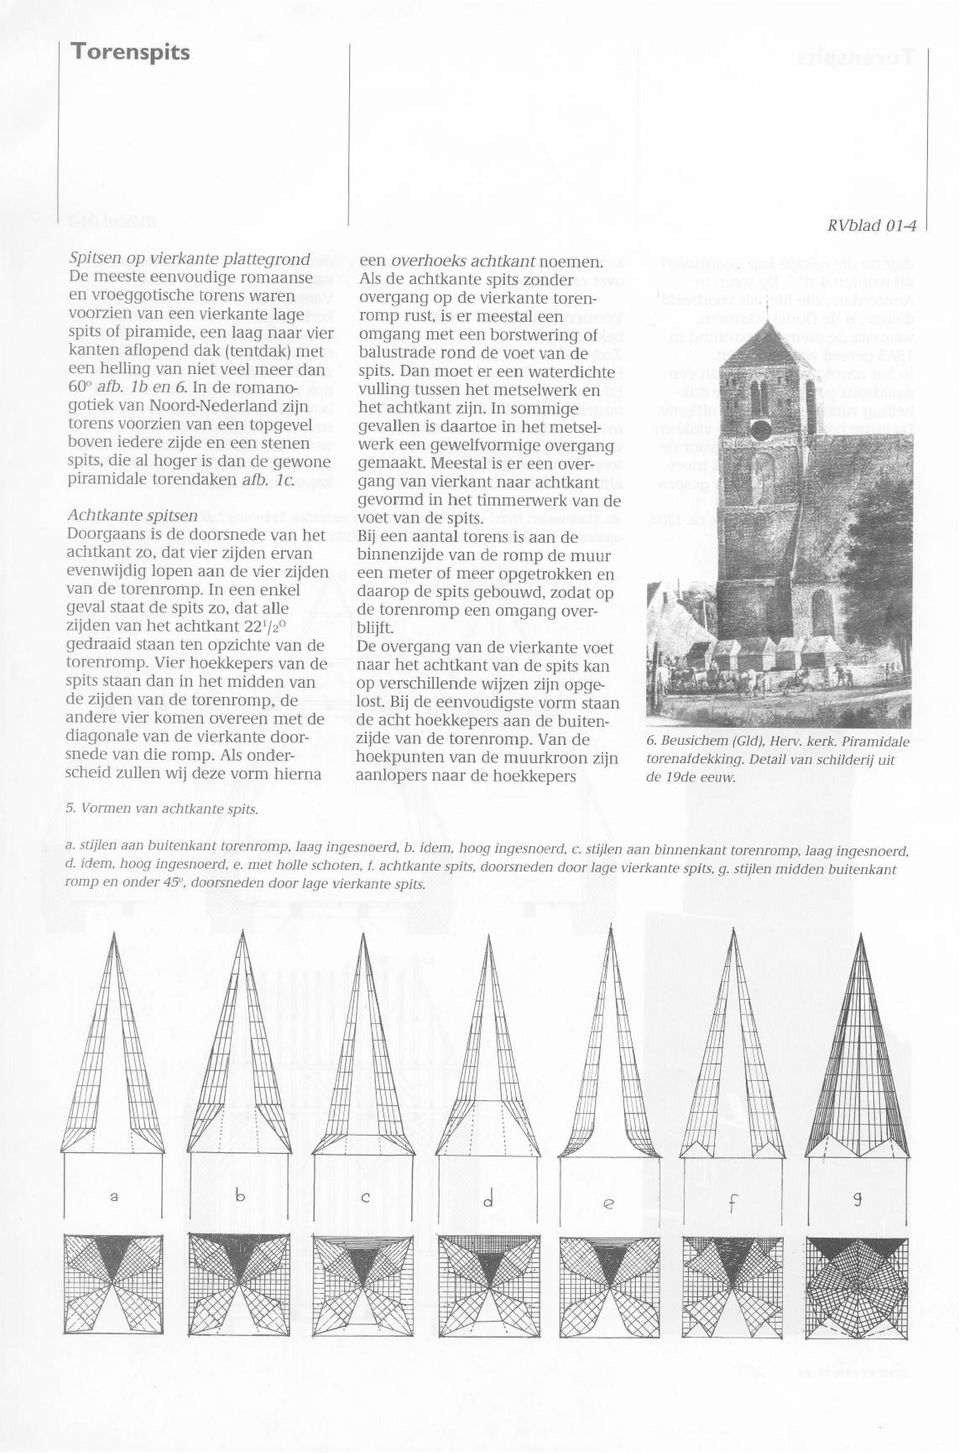 In de romanogotiek van Noord-Nederland zijn torens voorzien van een topgevel boven iedere zijde en een stenen spits, die al hoger is dan de gewone piramidale torendaken afb. IC.